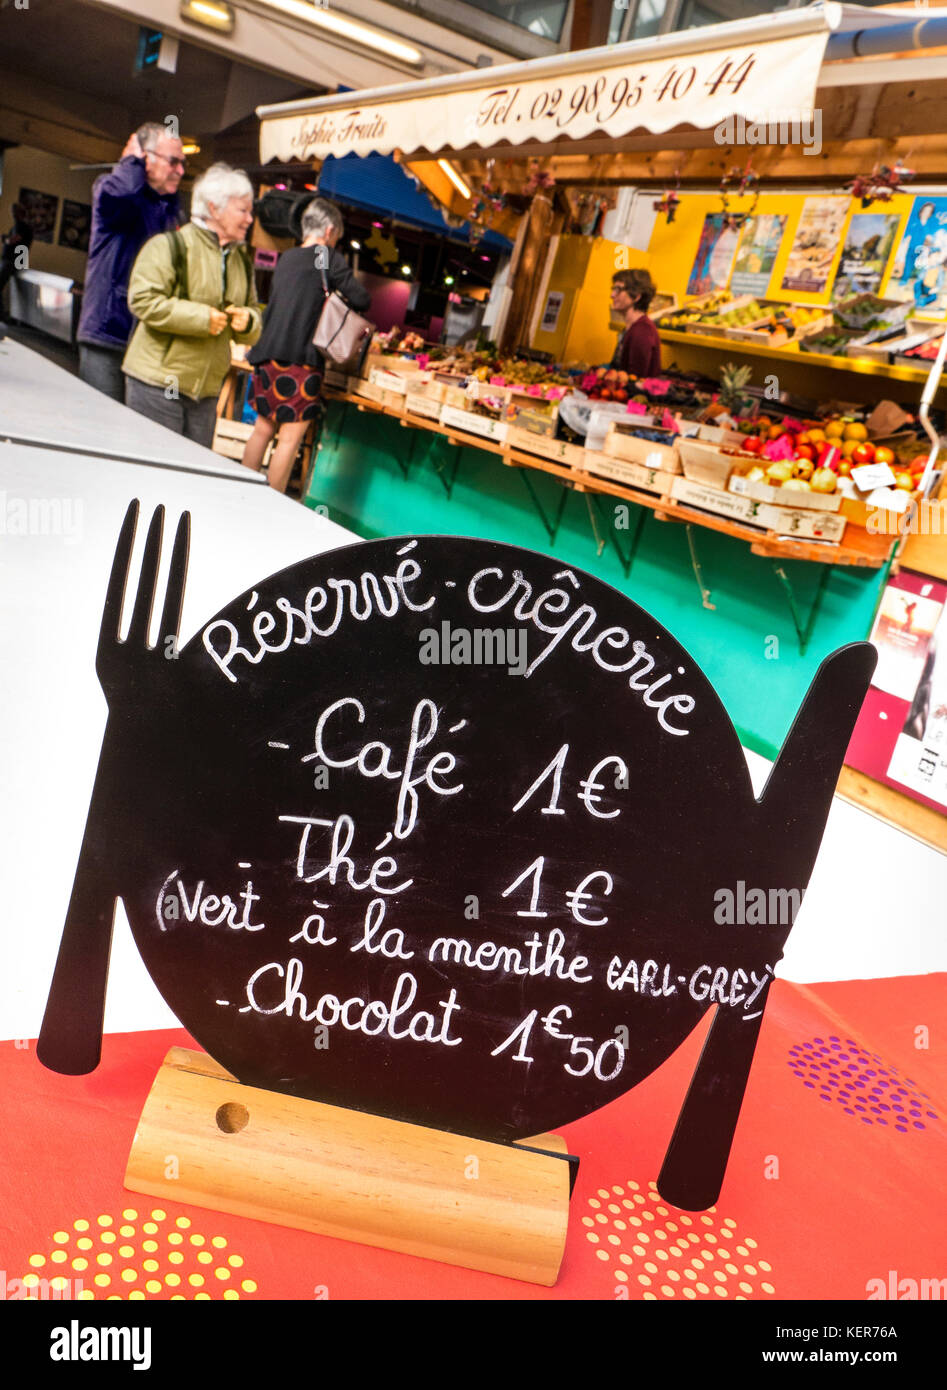 Tableau noir d'euros menu Français en forme de fourchette Couteau plaque, la promotion d'un café, thé, Earl Grey, chocolat, sur table, marché des producteurs de Quimper Bretagne France Banque D'Images